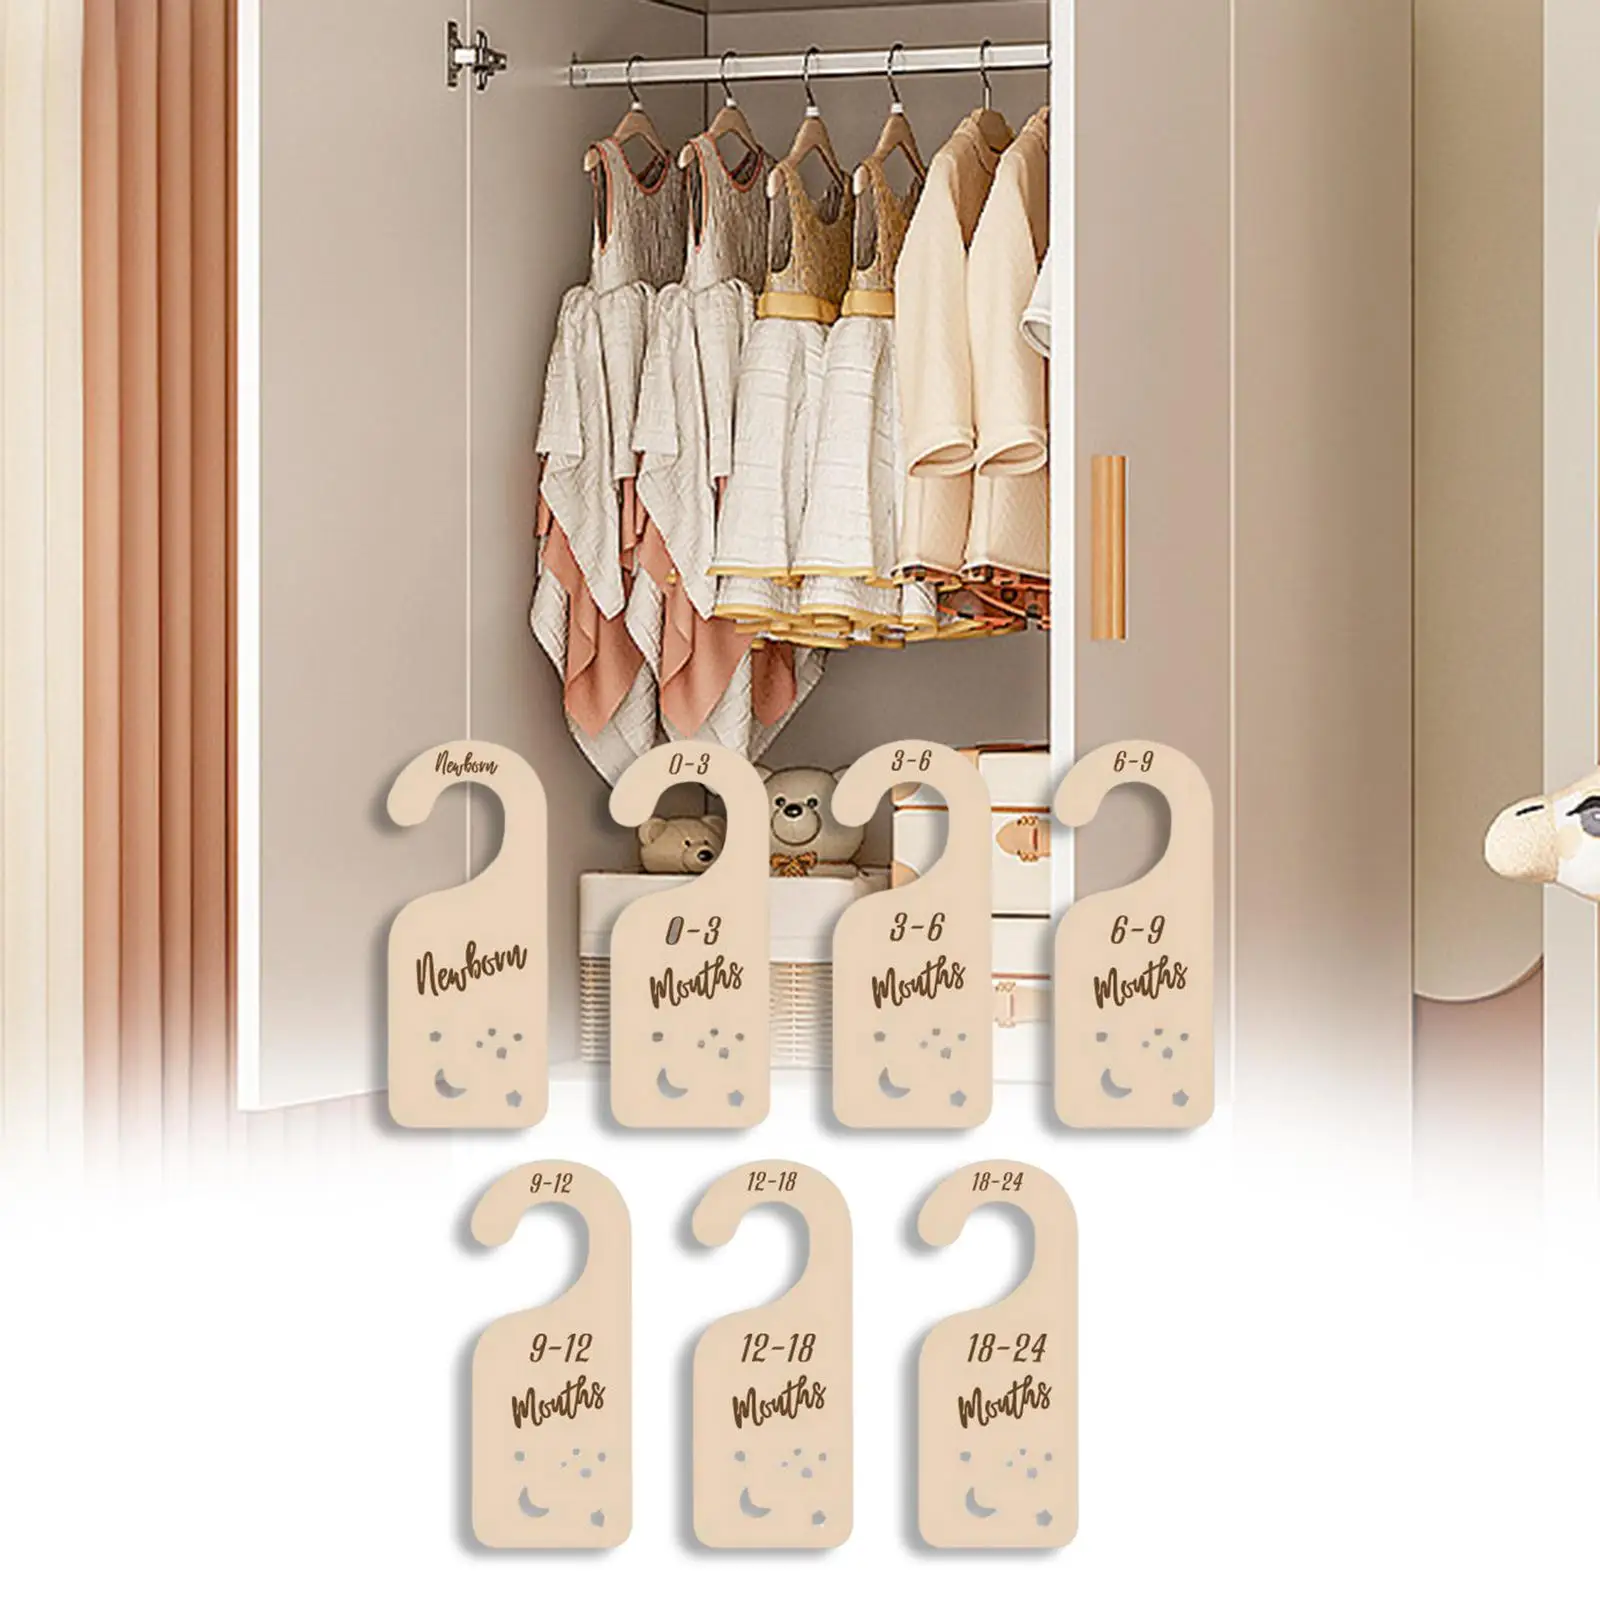 7x Wooden Closet Divider Infant Wardrobe Divider Label for Registry Shower Gifts